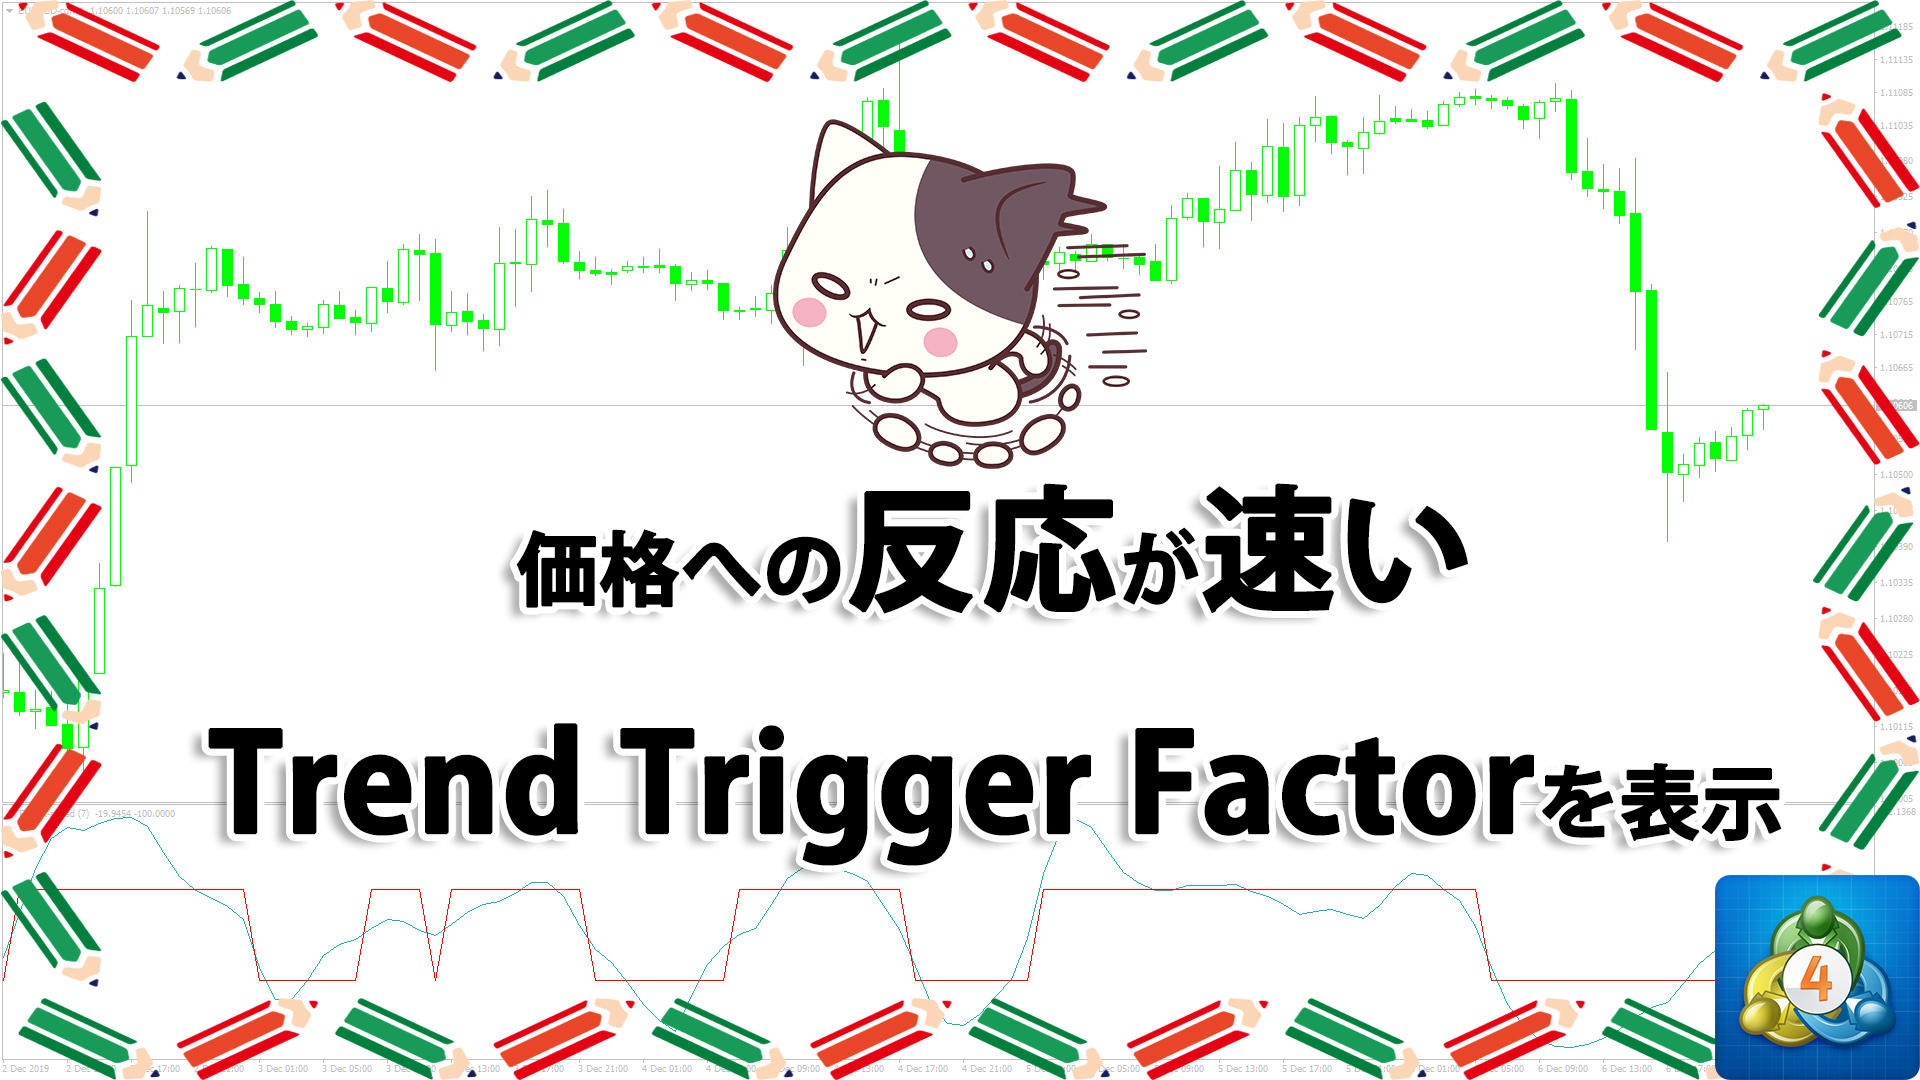 価格に敏感に反応するTrend Trigger Factorを表示するMT4インジケーター「TTF_look-ahead」